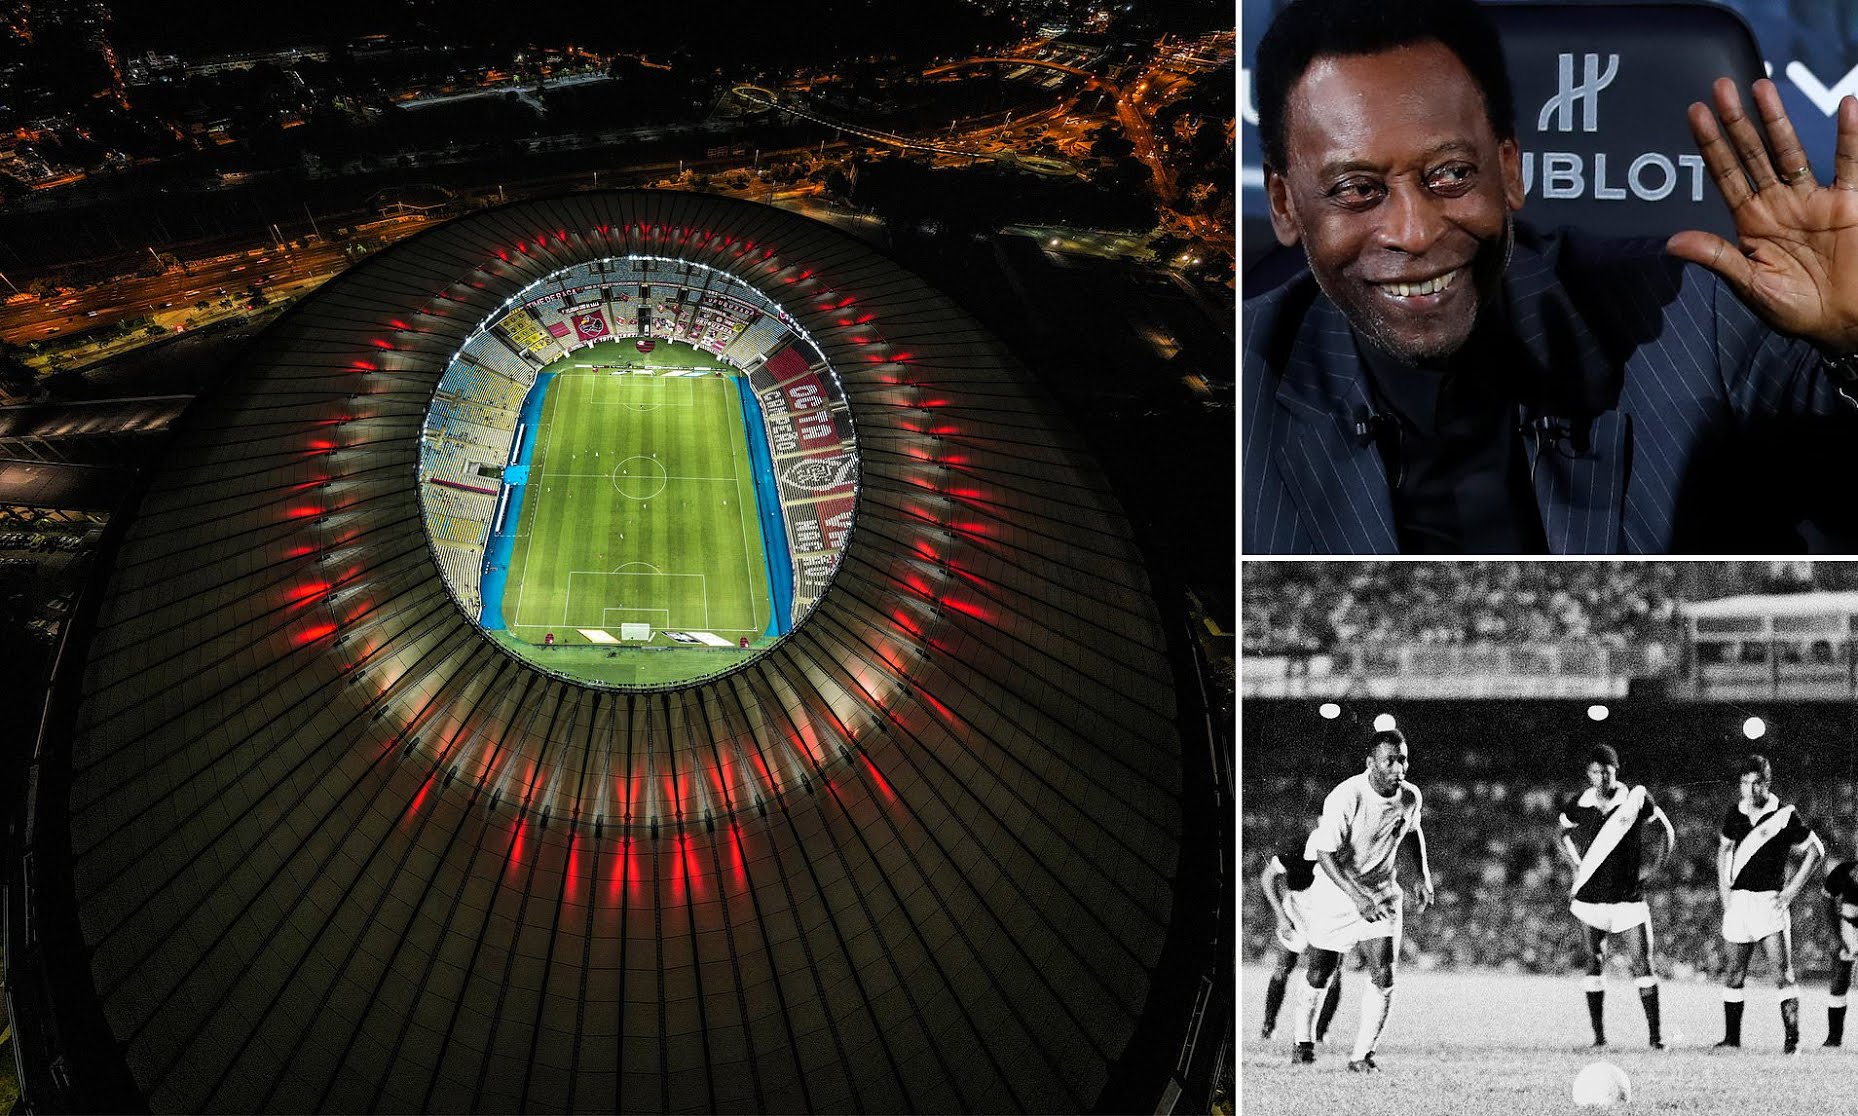 Stadiumi i famshëm “Maracana” do të të marrë emrin e legjendës braziliane, Pele